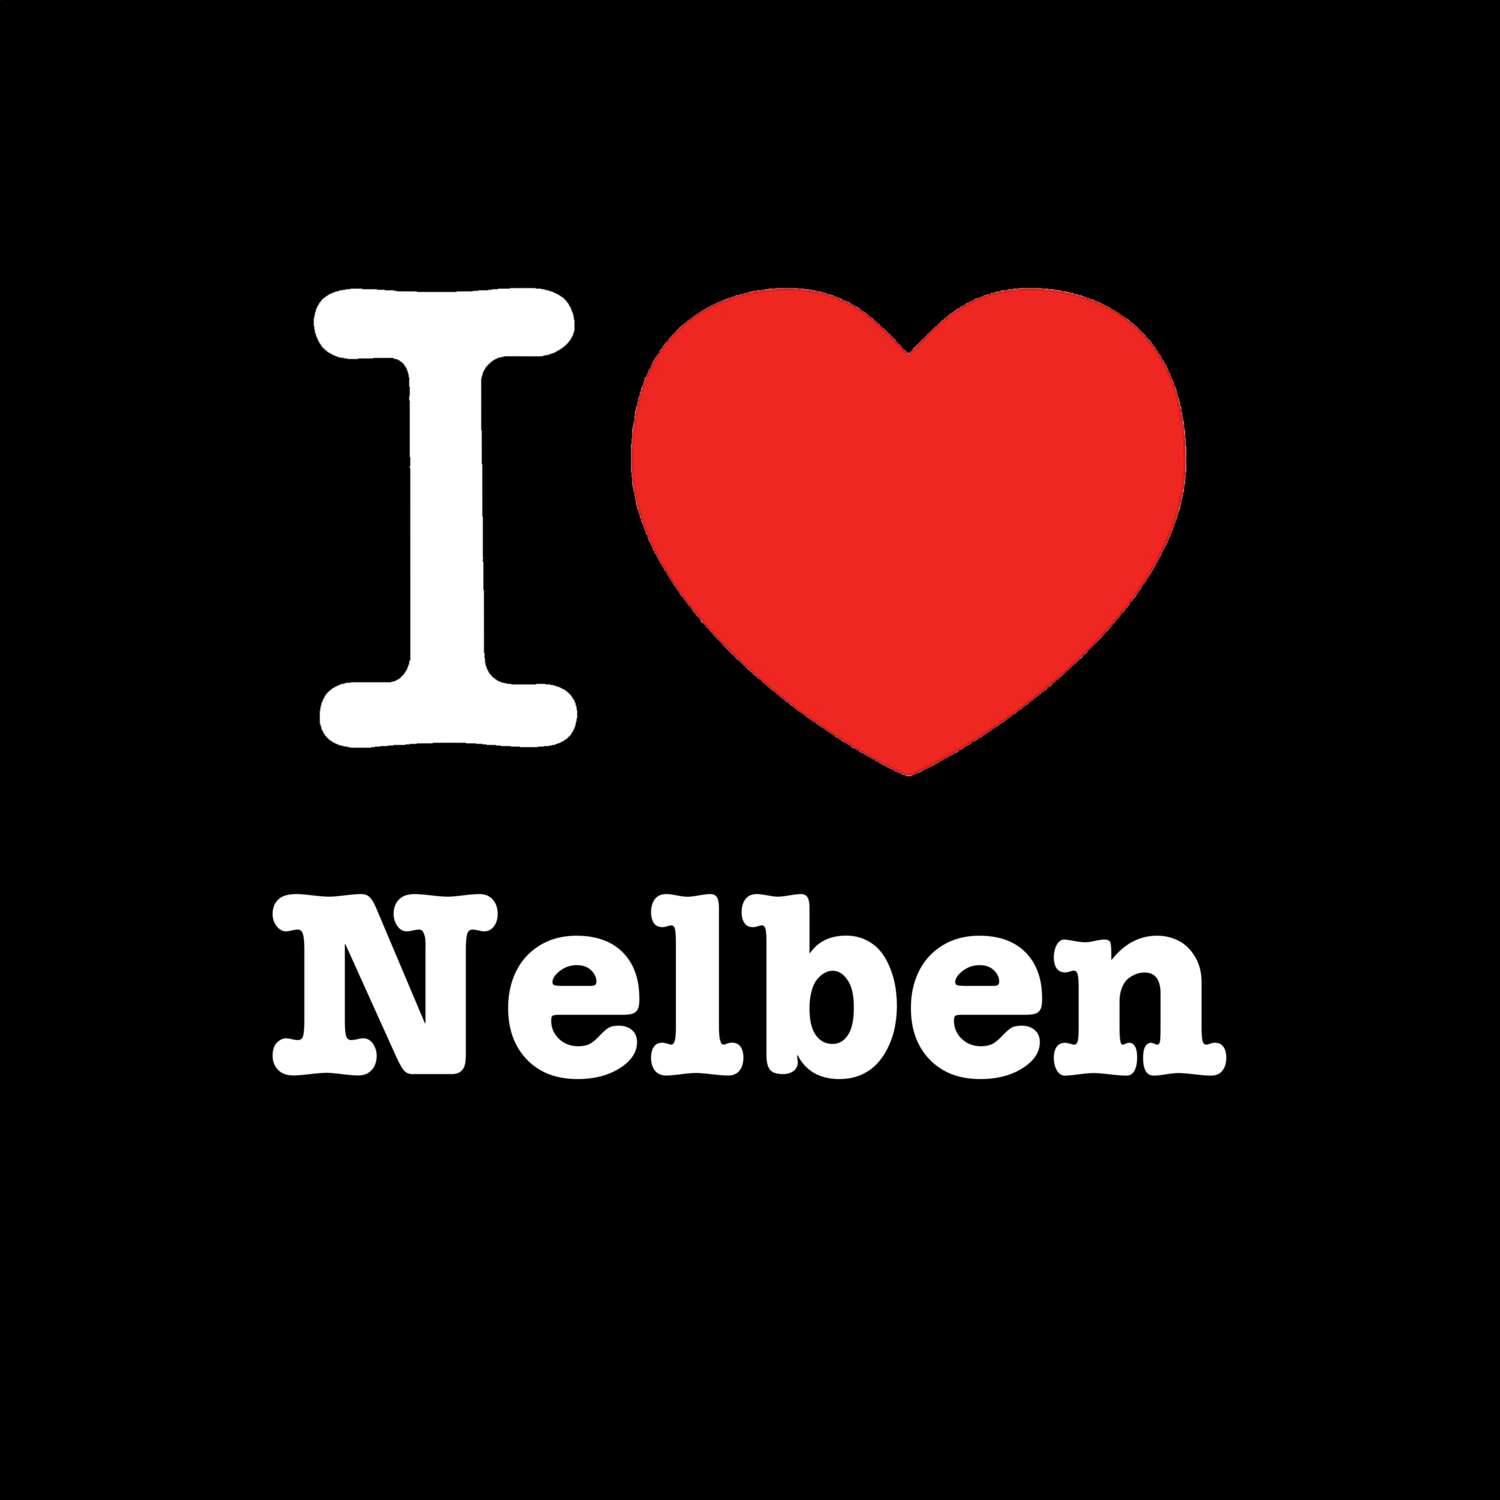 Nelben T-Shirt »I love«